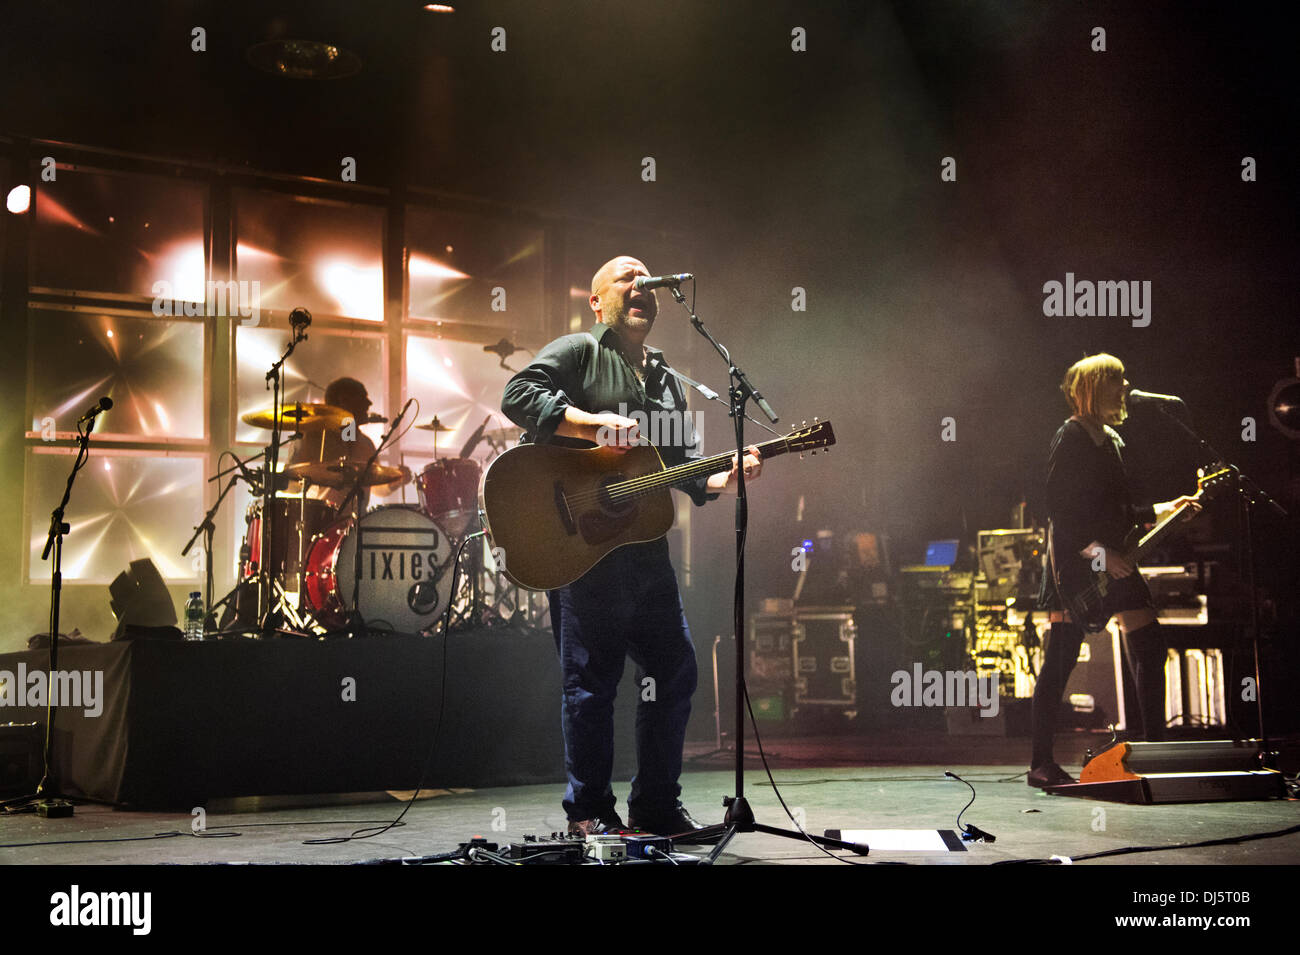 Manchester, Großbritannien. 21. November 2013. Uns Rock Band Pixies in Konzert in der O2 Apollo, Manchester, UK. David Lovering (Schlagzeug), Schwarz Francis (Gitarre) und Kim Shattuck (Bass). Stockfoto